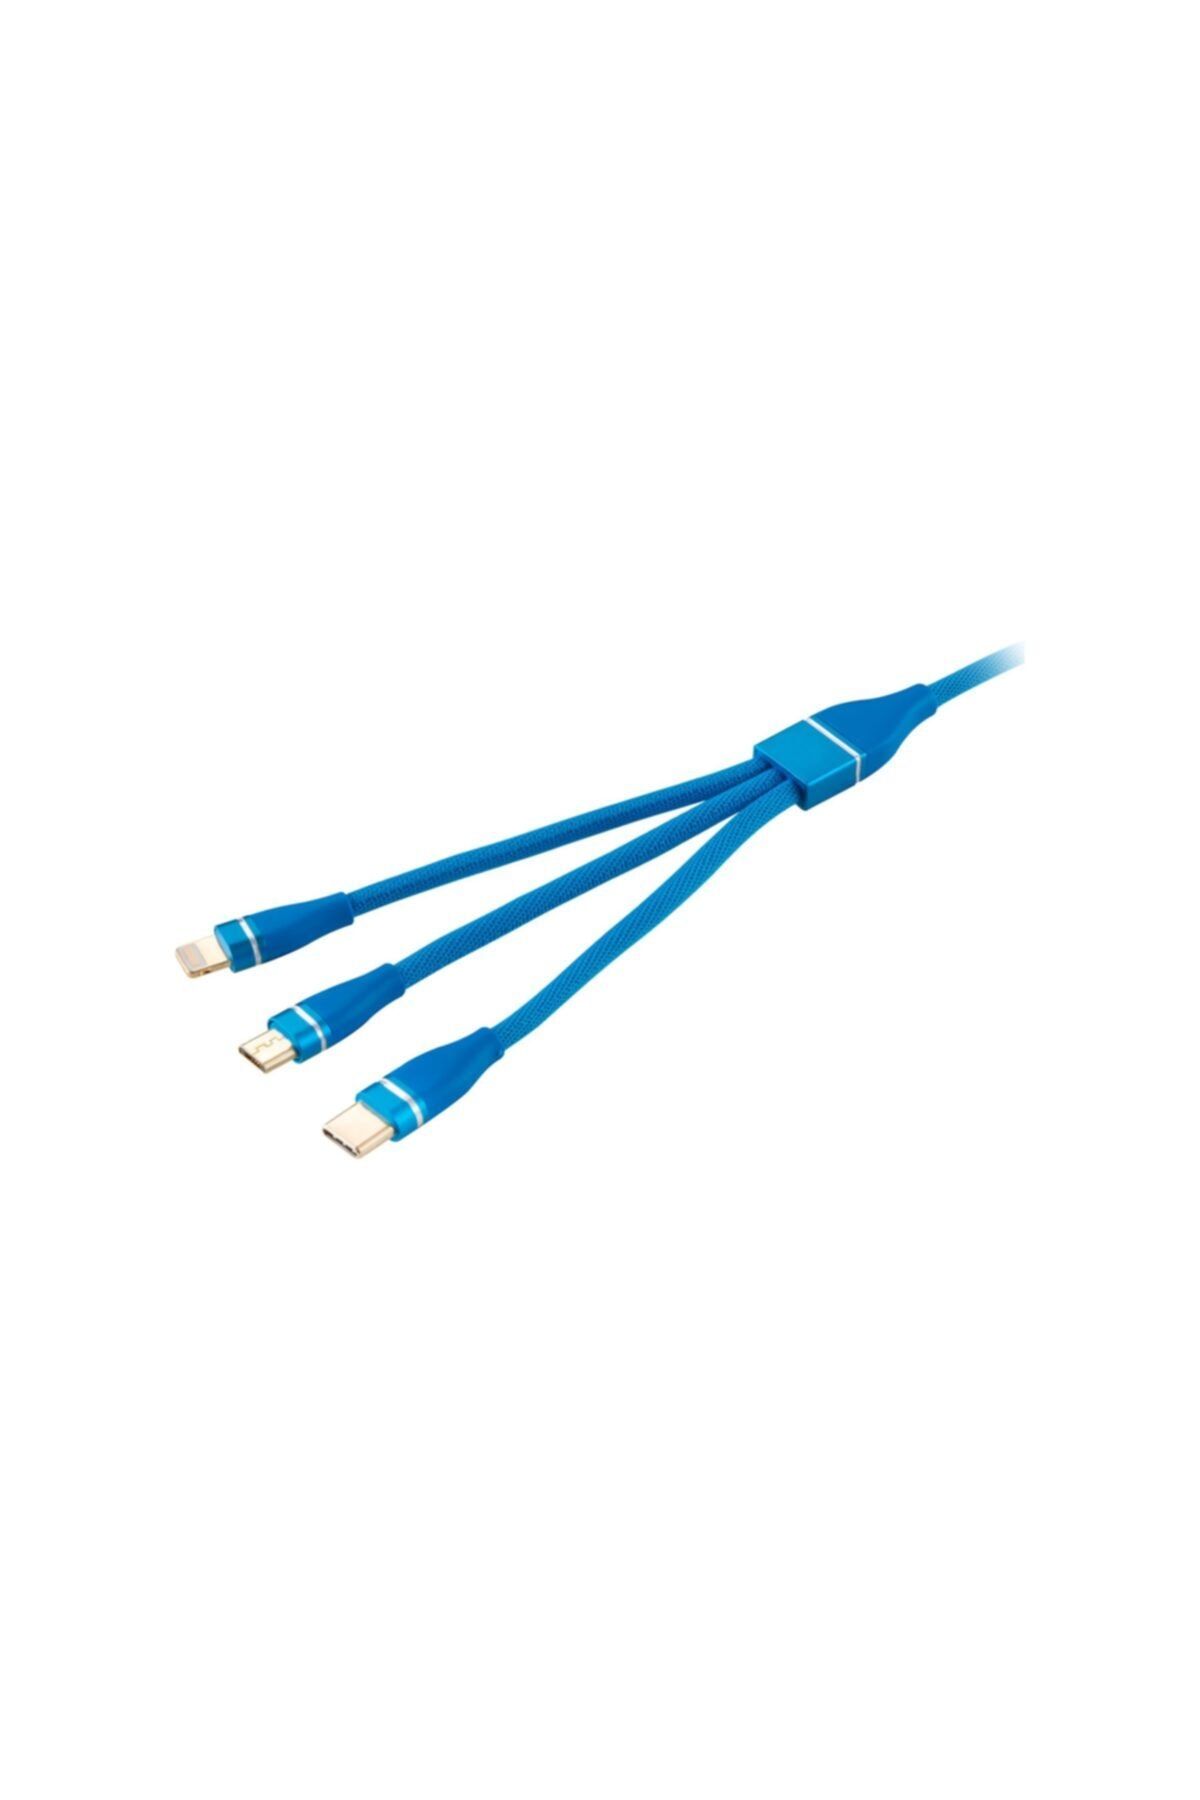 MF PRODUCT 0060 3 In 1 Hızlı Şarj Kablosu 1.2 M Mavi